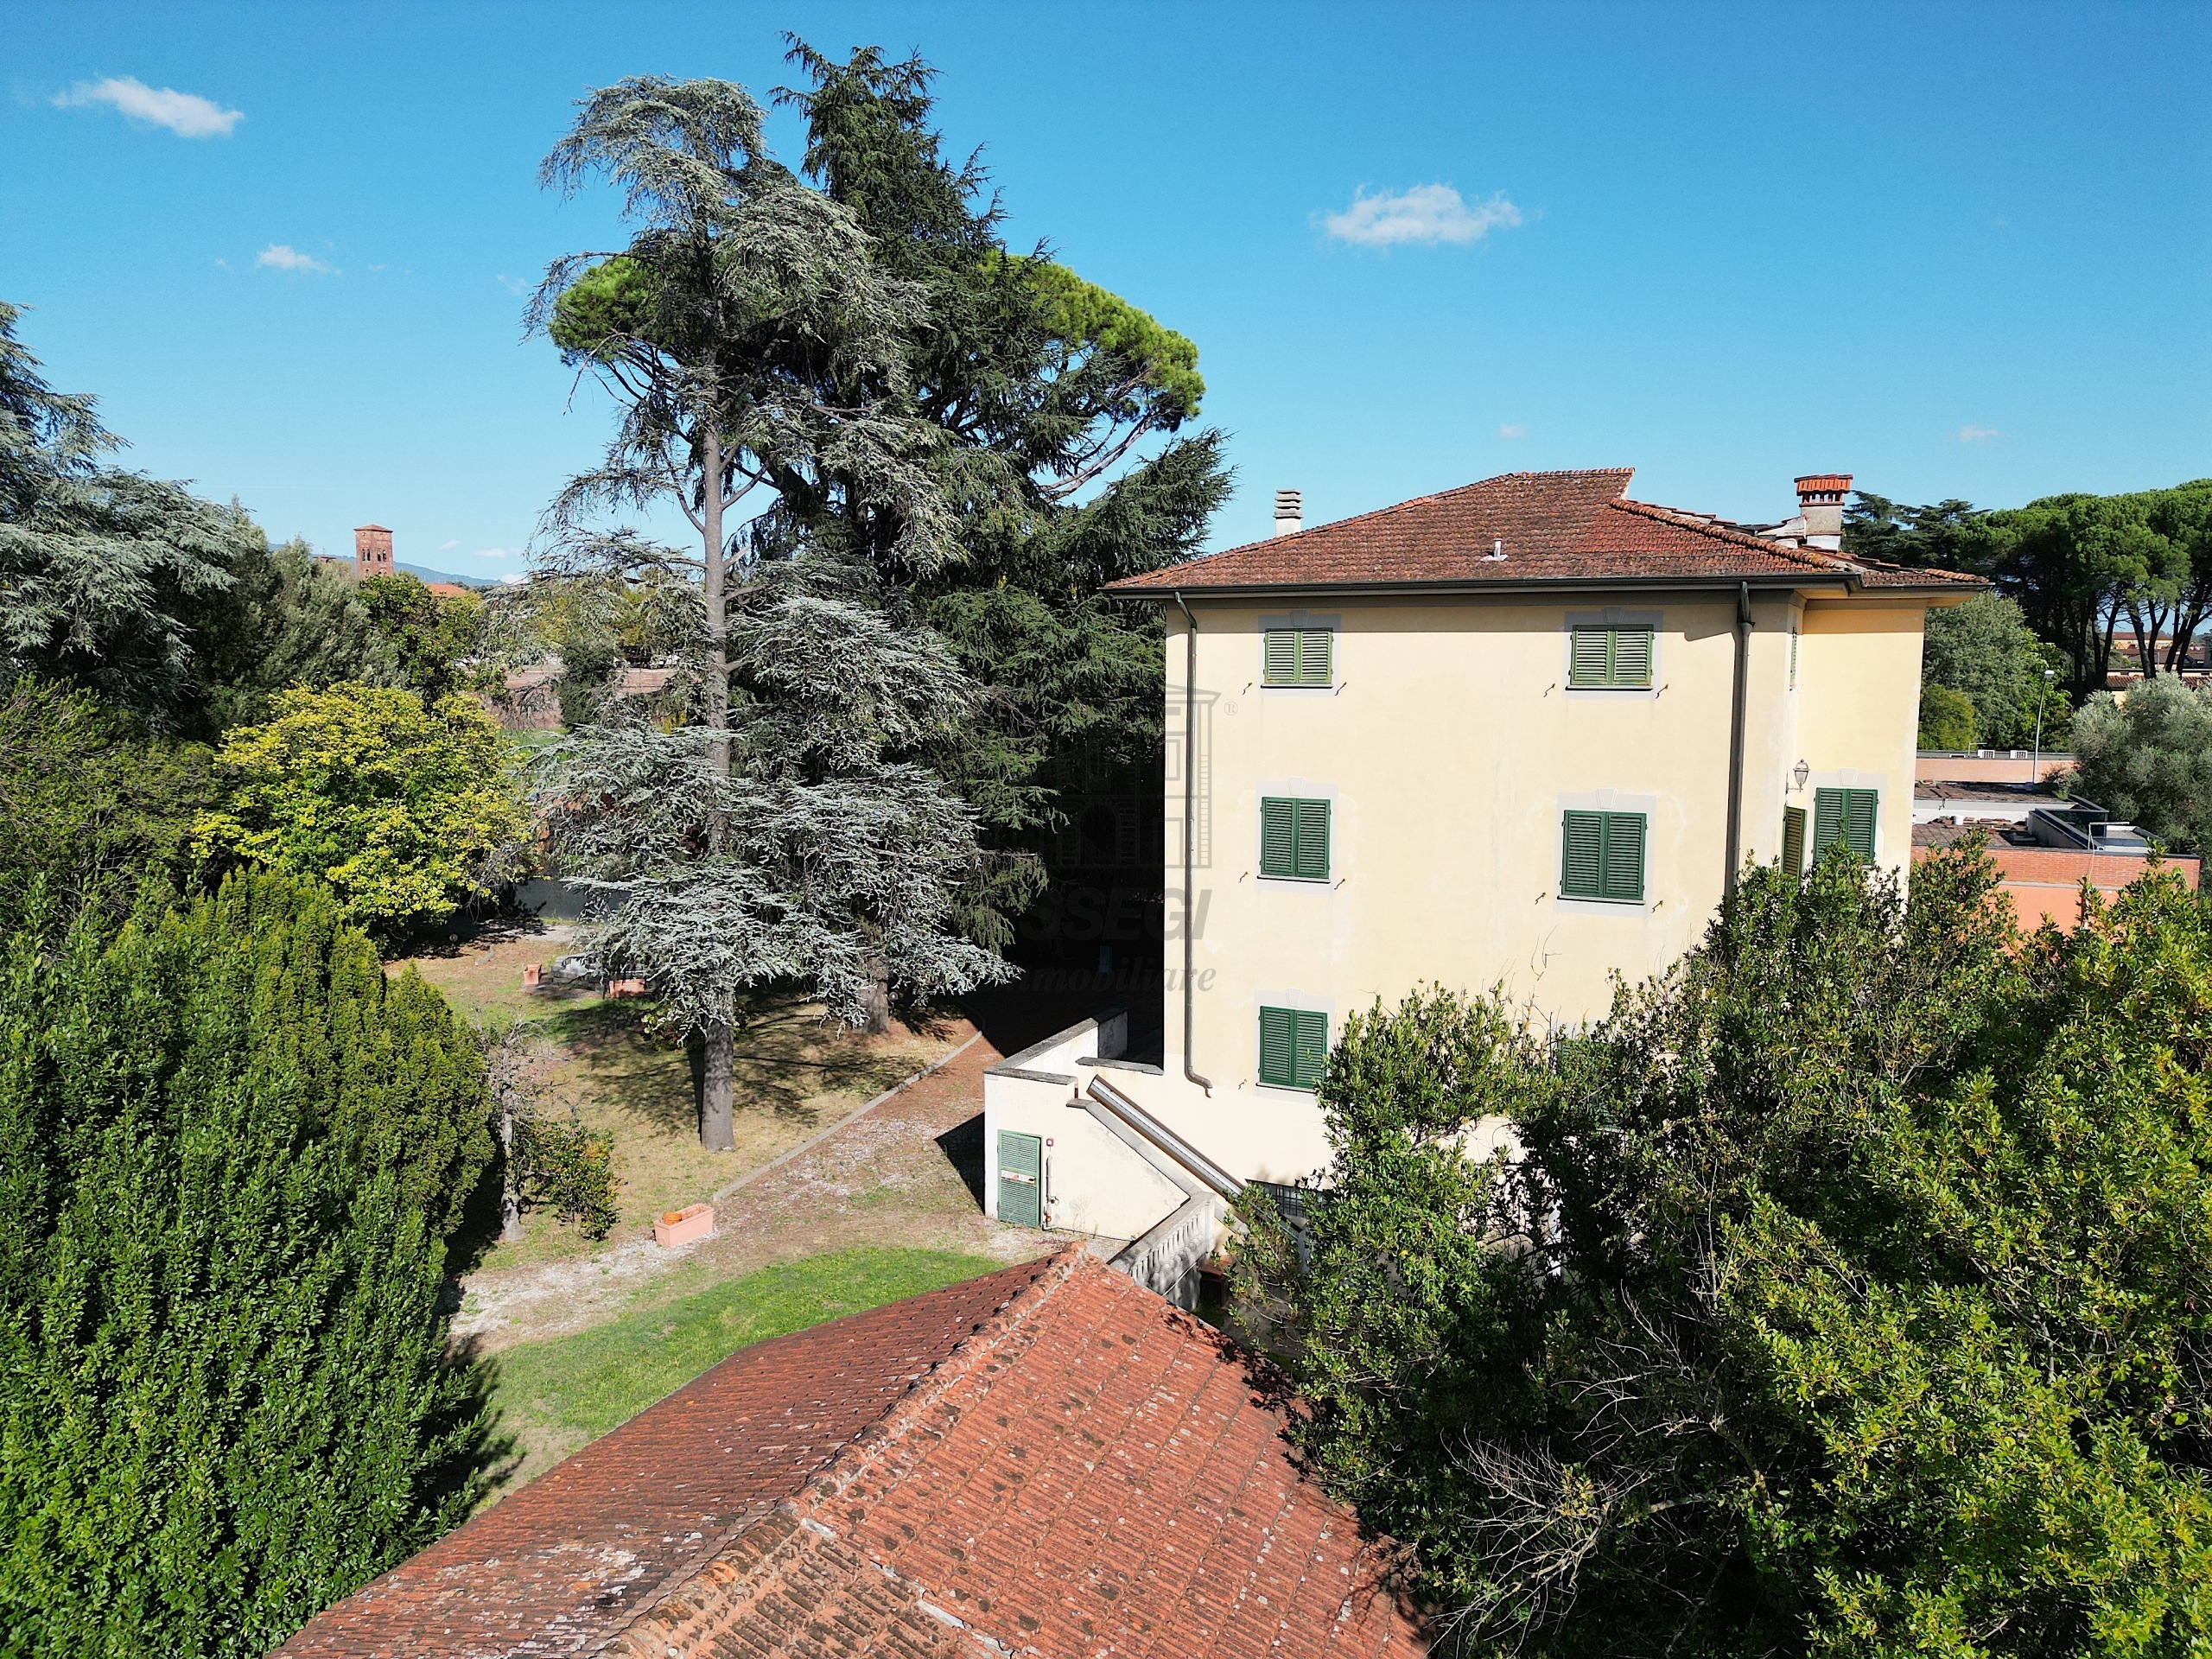 Ufficio con giardino in viale pacini 115, Lucca